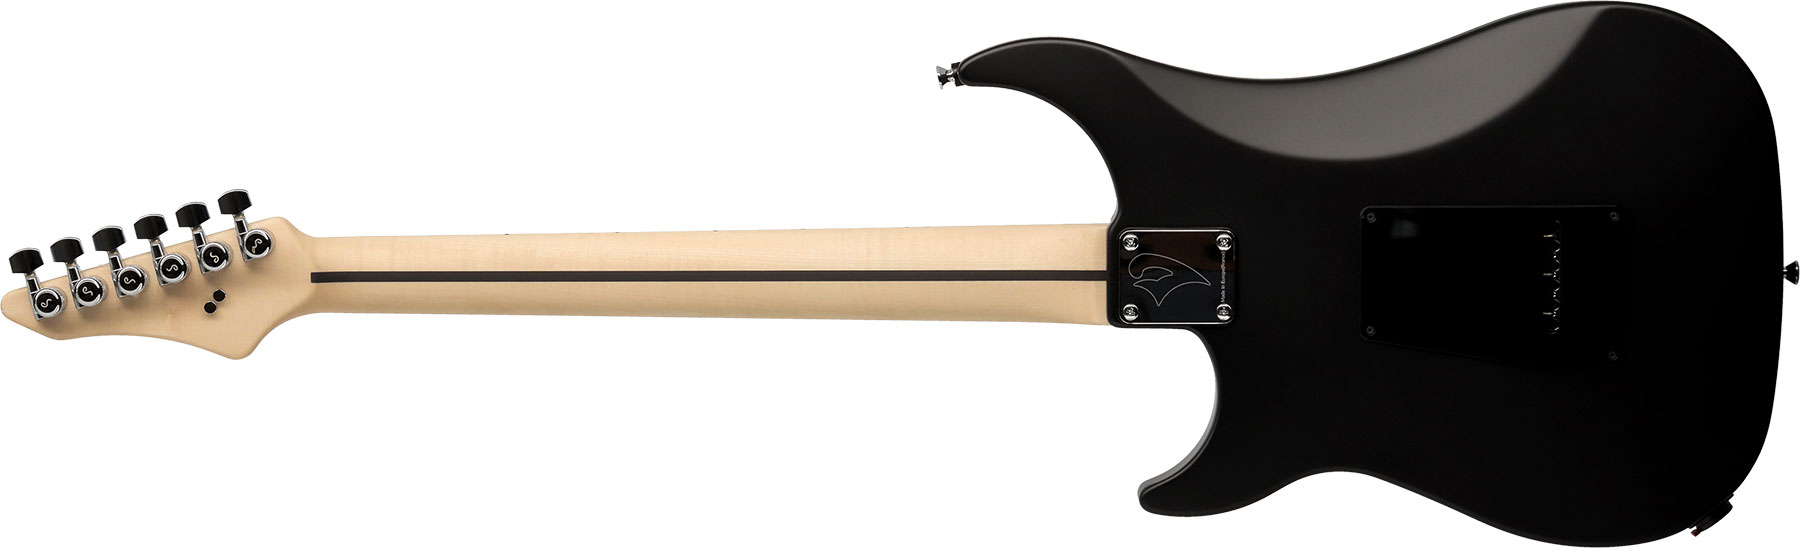 Vigier Excalibur Special Hsh Trem Rw +housse - Black Diamond - Elektrische gitaar in Str-vorm - Variation 1